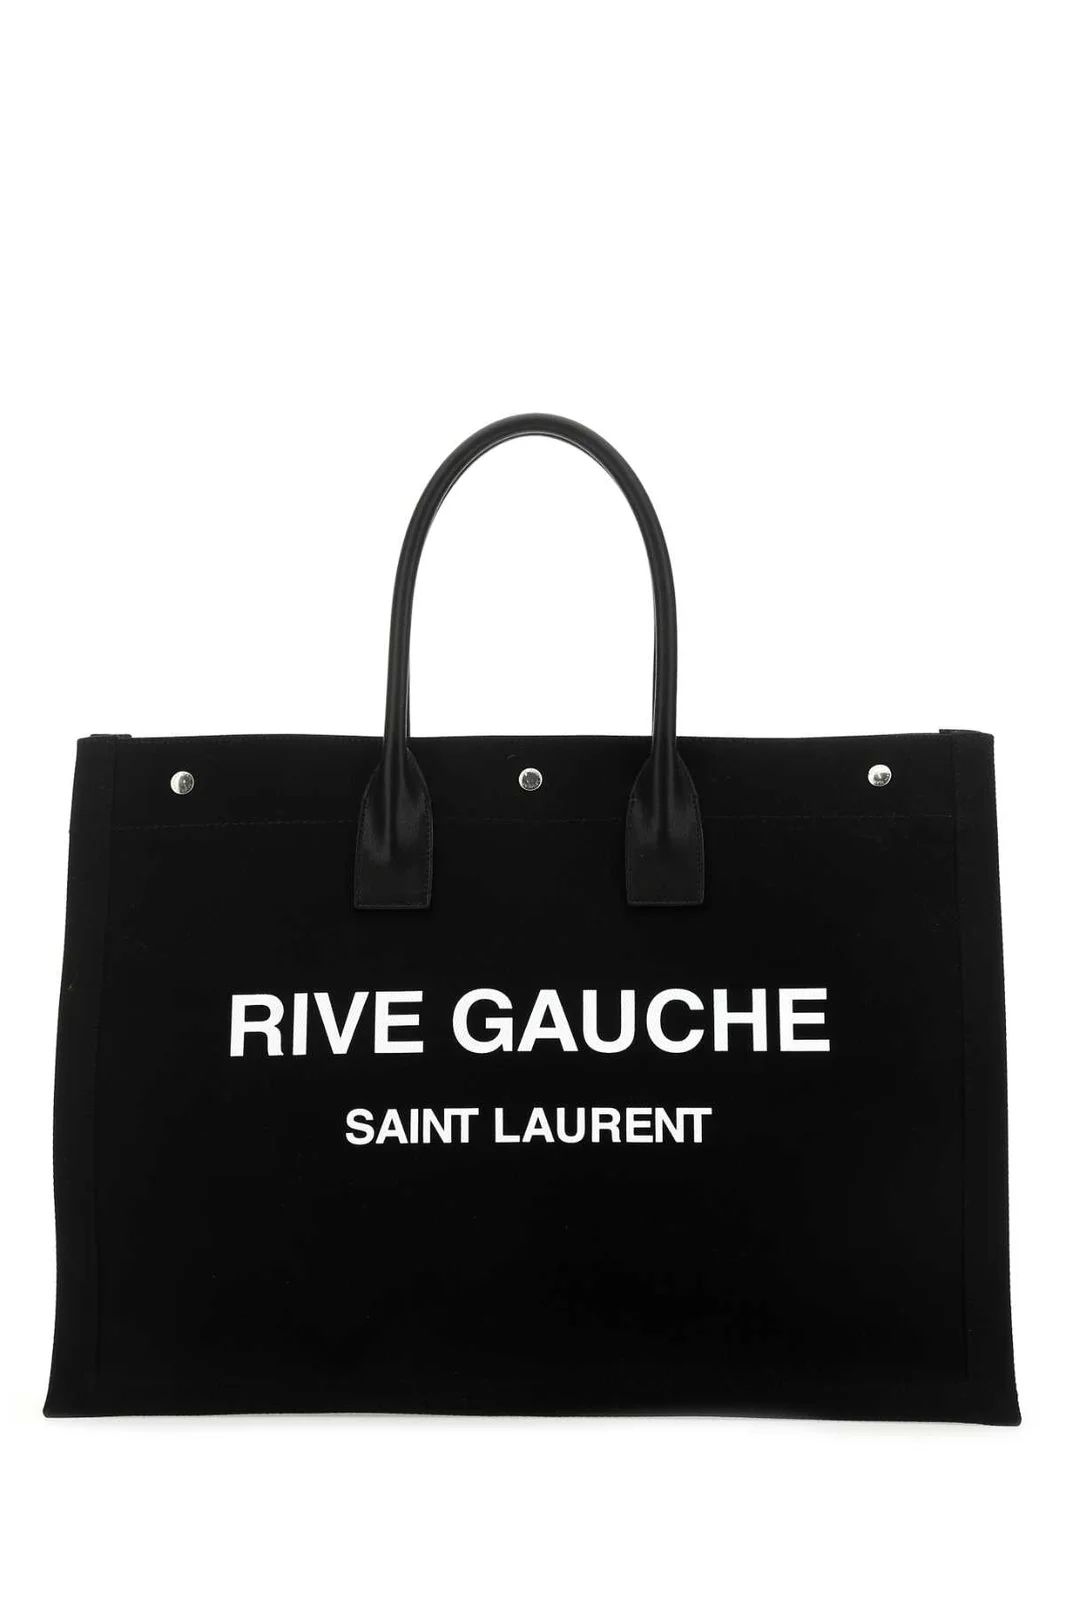 Saint Laurent Rive Gauche Logo Printed Tote Bag | Cettire Global